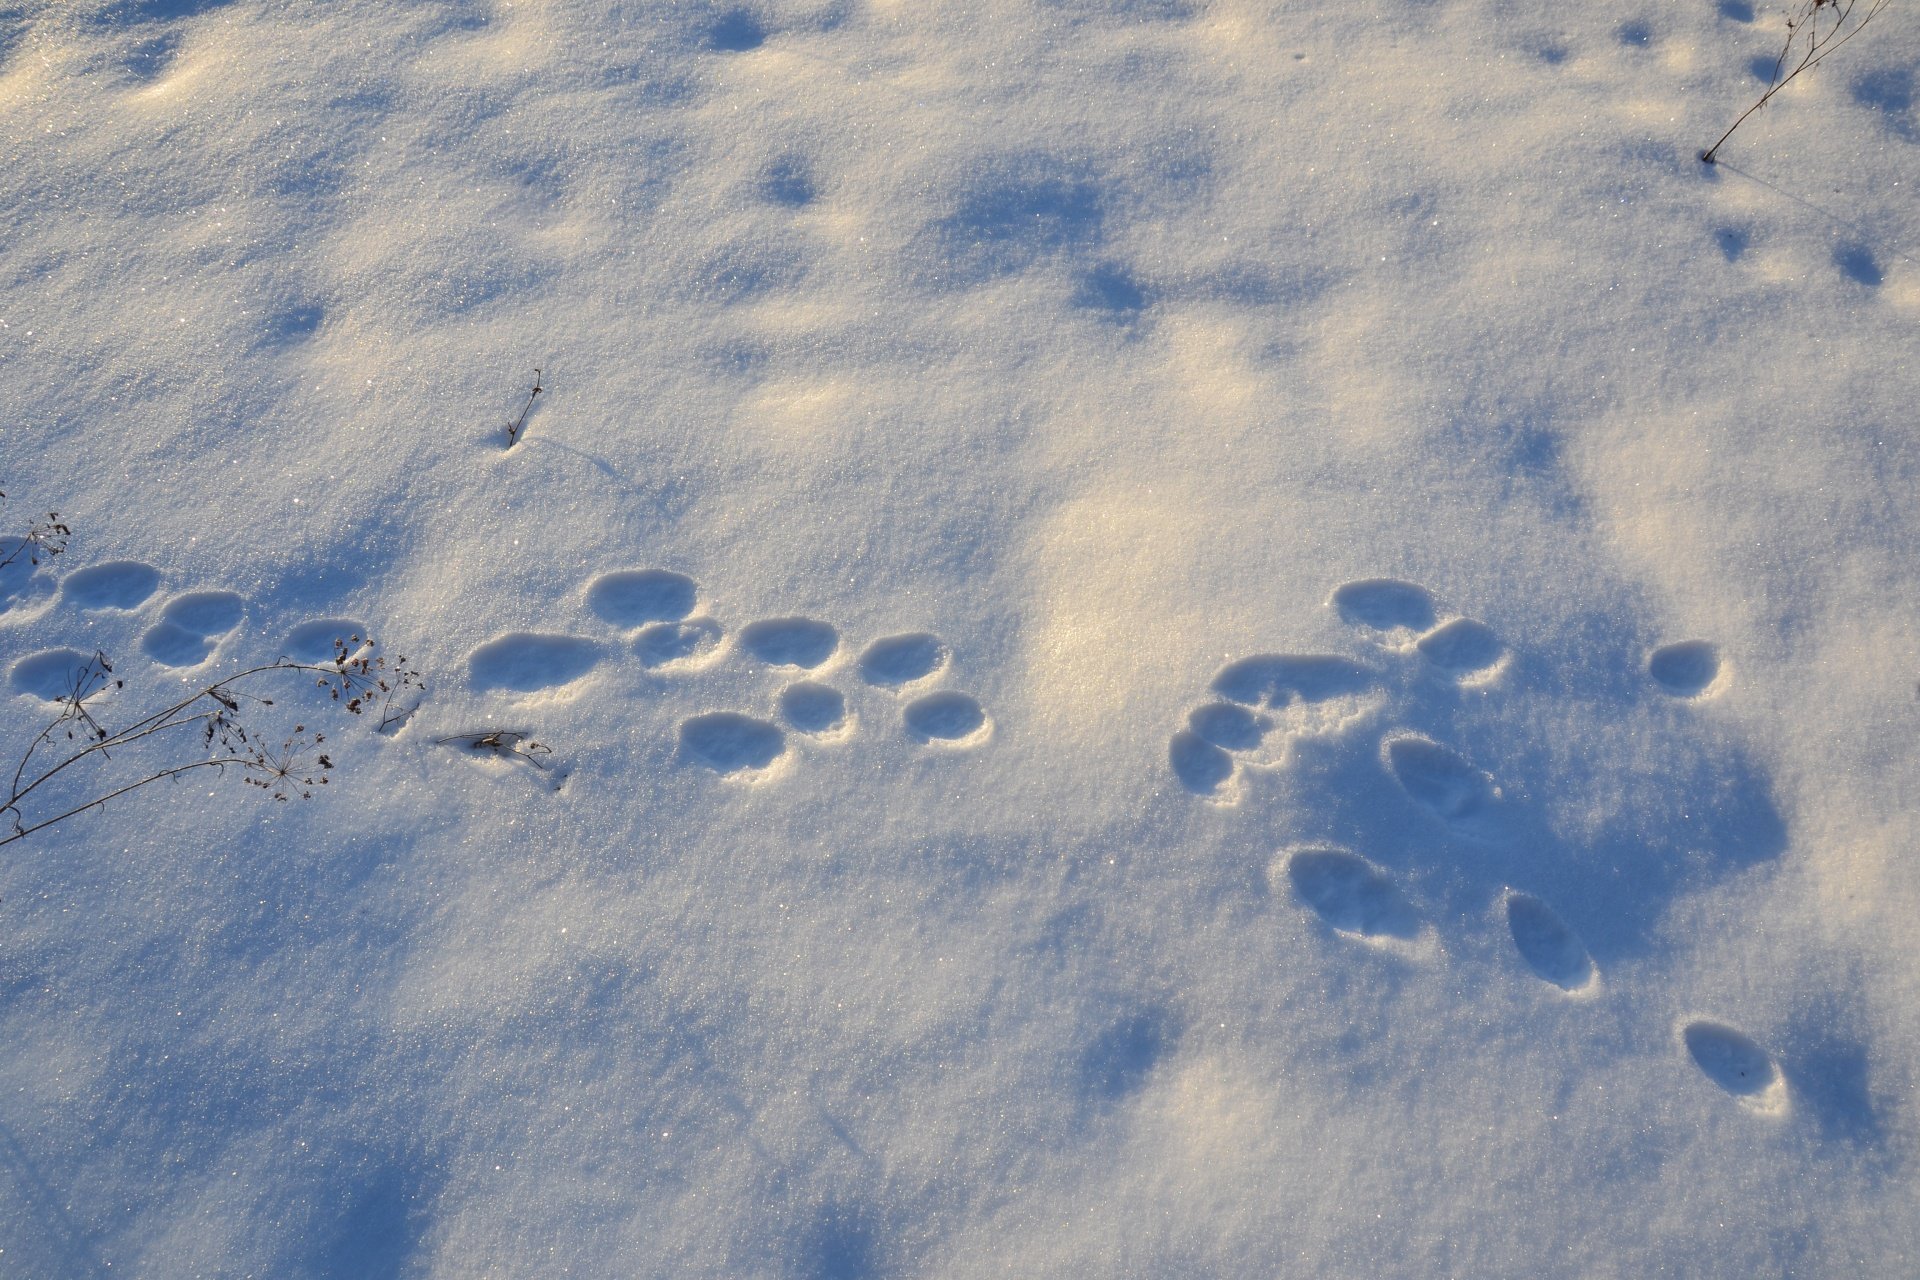 Заячьи и лисьи следы на снегу. Зимние следы зайца. Следы зайца беляка. Заячьи следы на снегу. Собачьи следы на снегу.